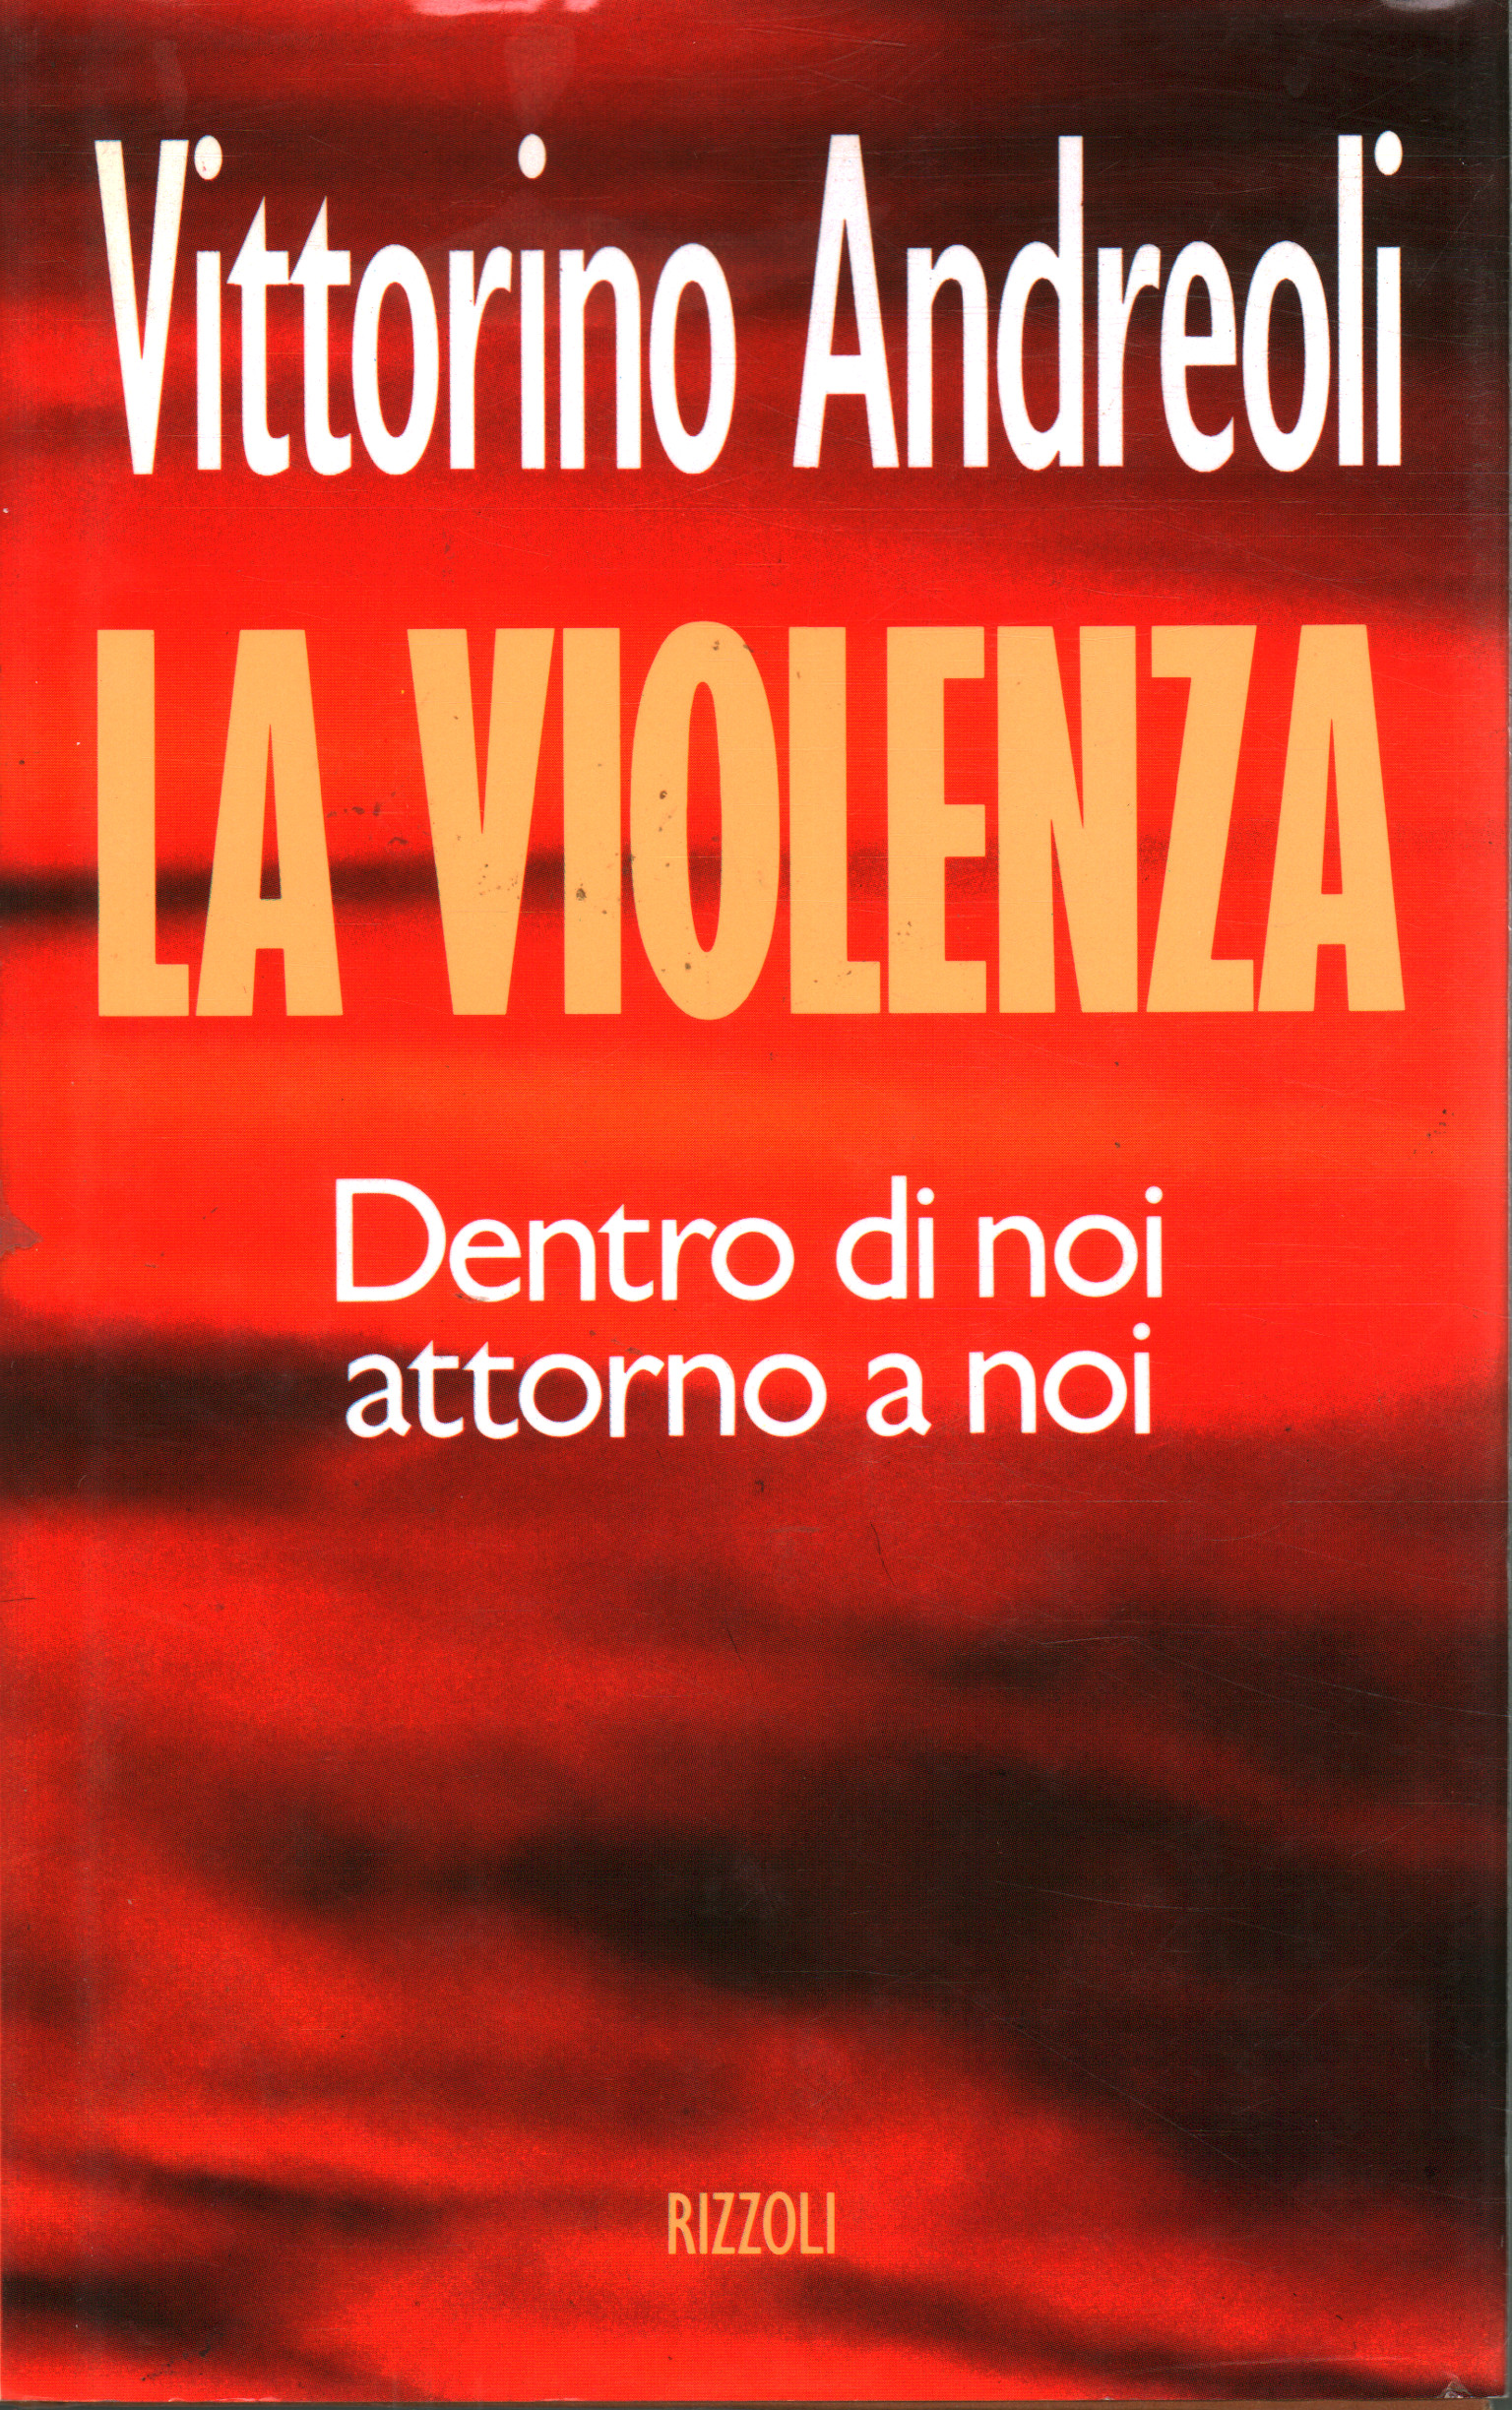 Violencia, Vittorino Andreoli